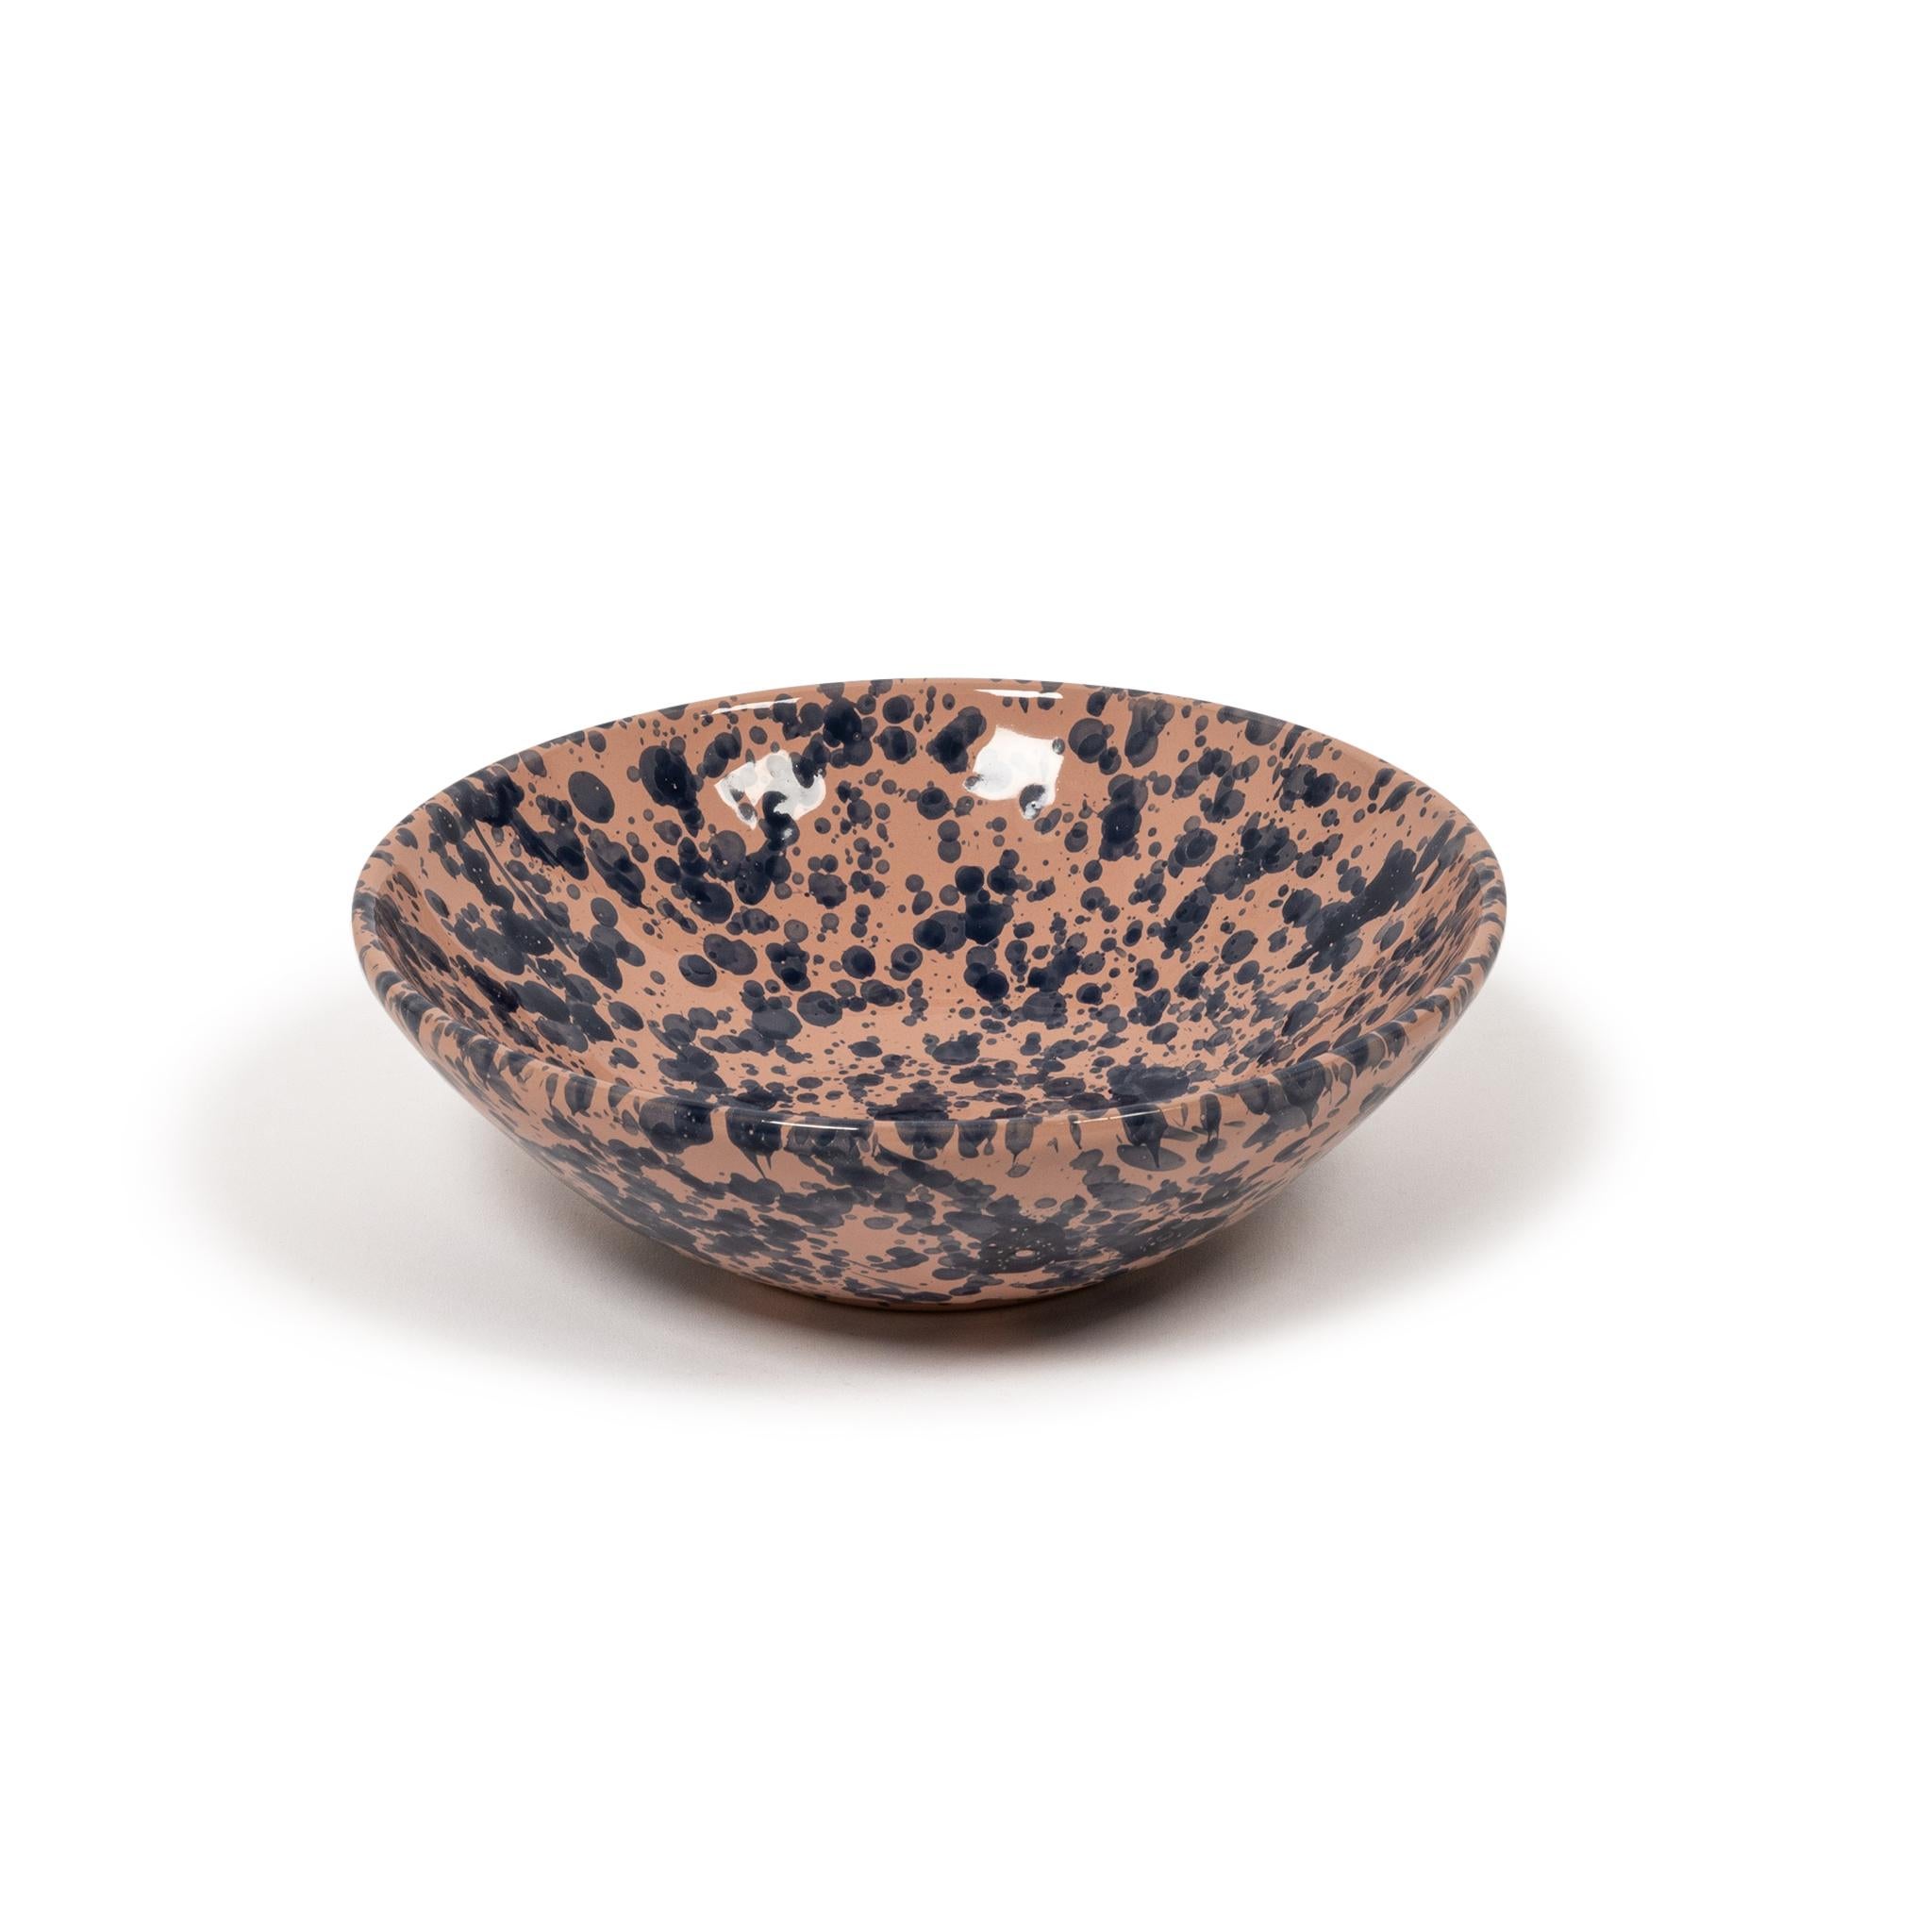 Splatter Bowl, Large, Tan & Ivory, Modern Rustic Design, Large Pasta Bowl, Chic 2